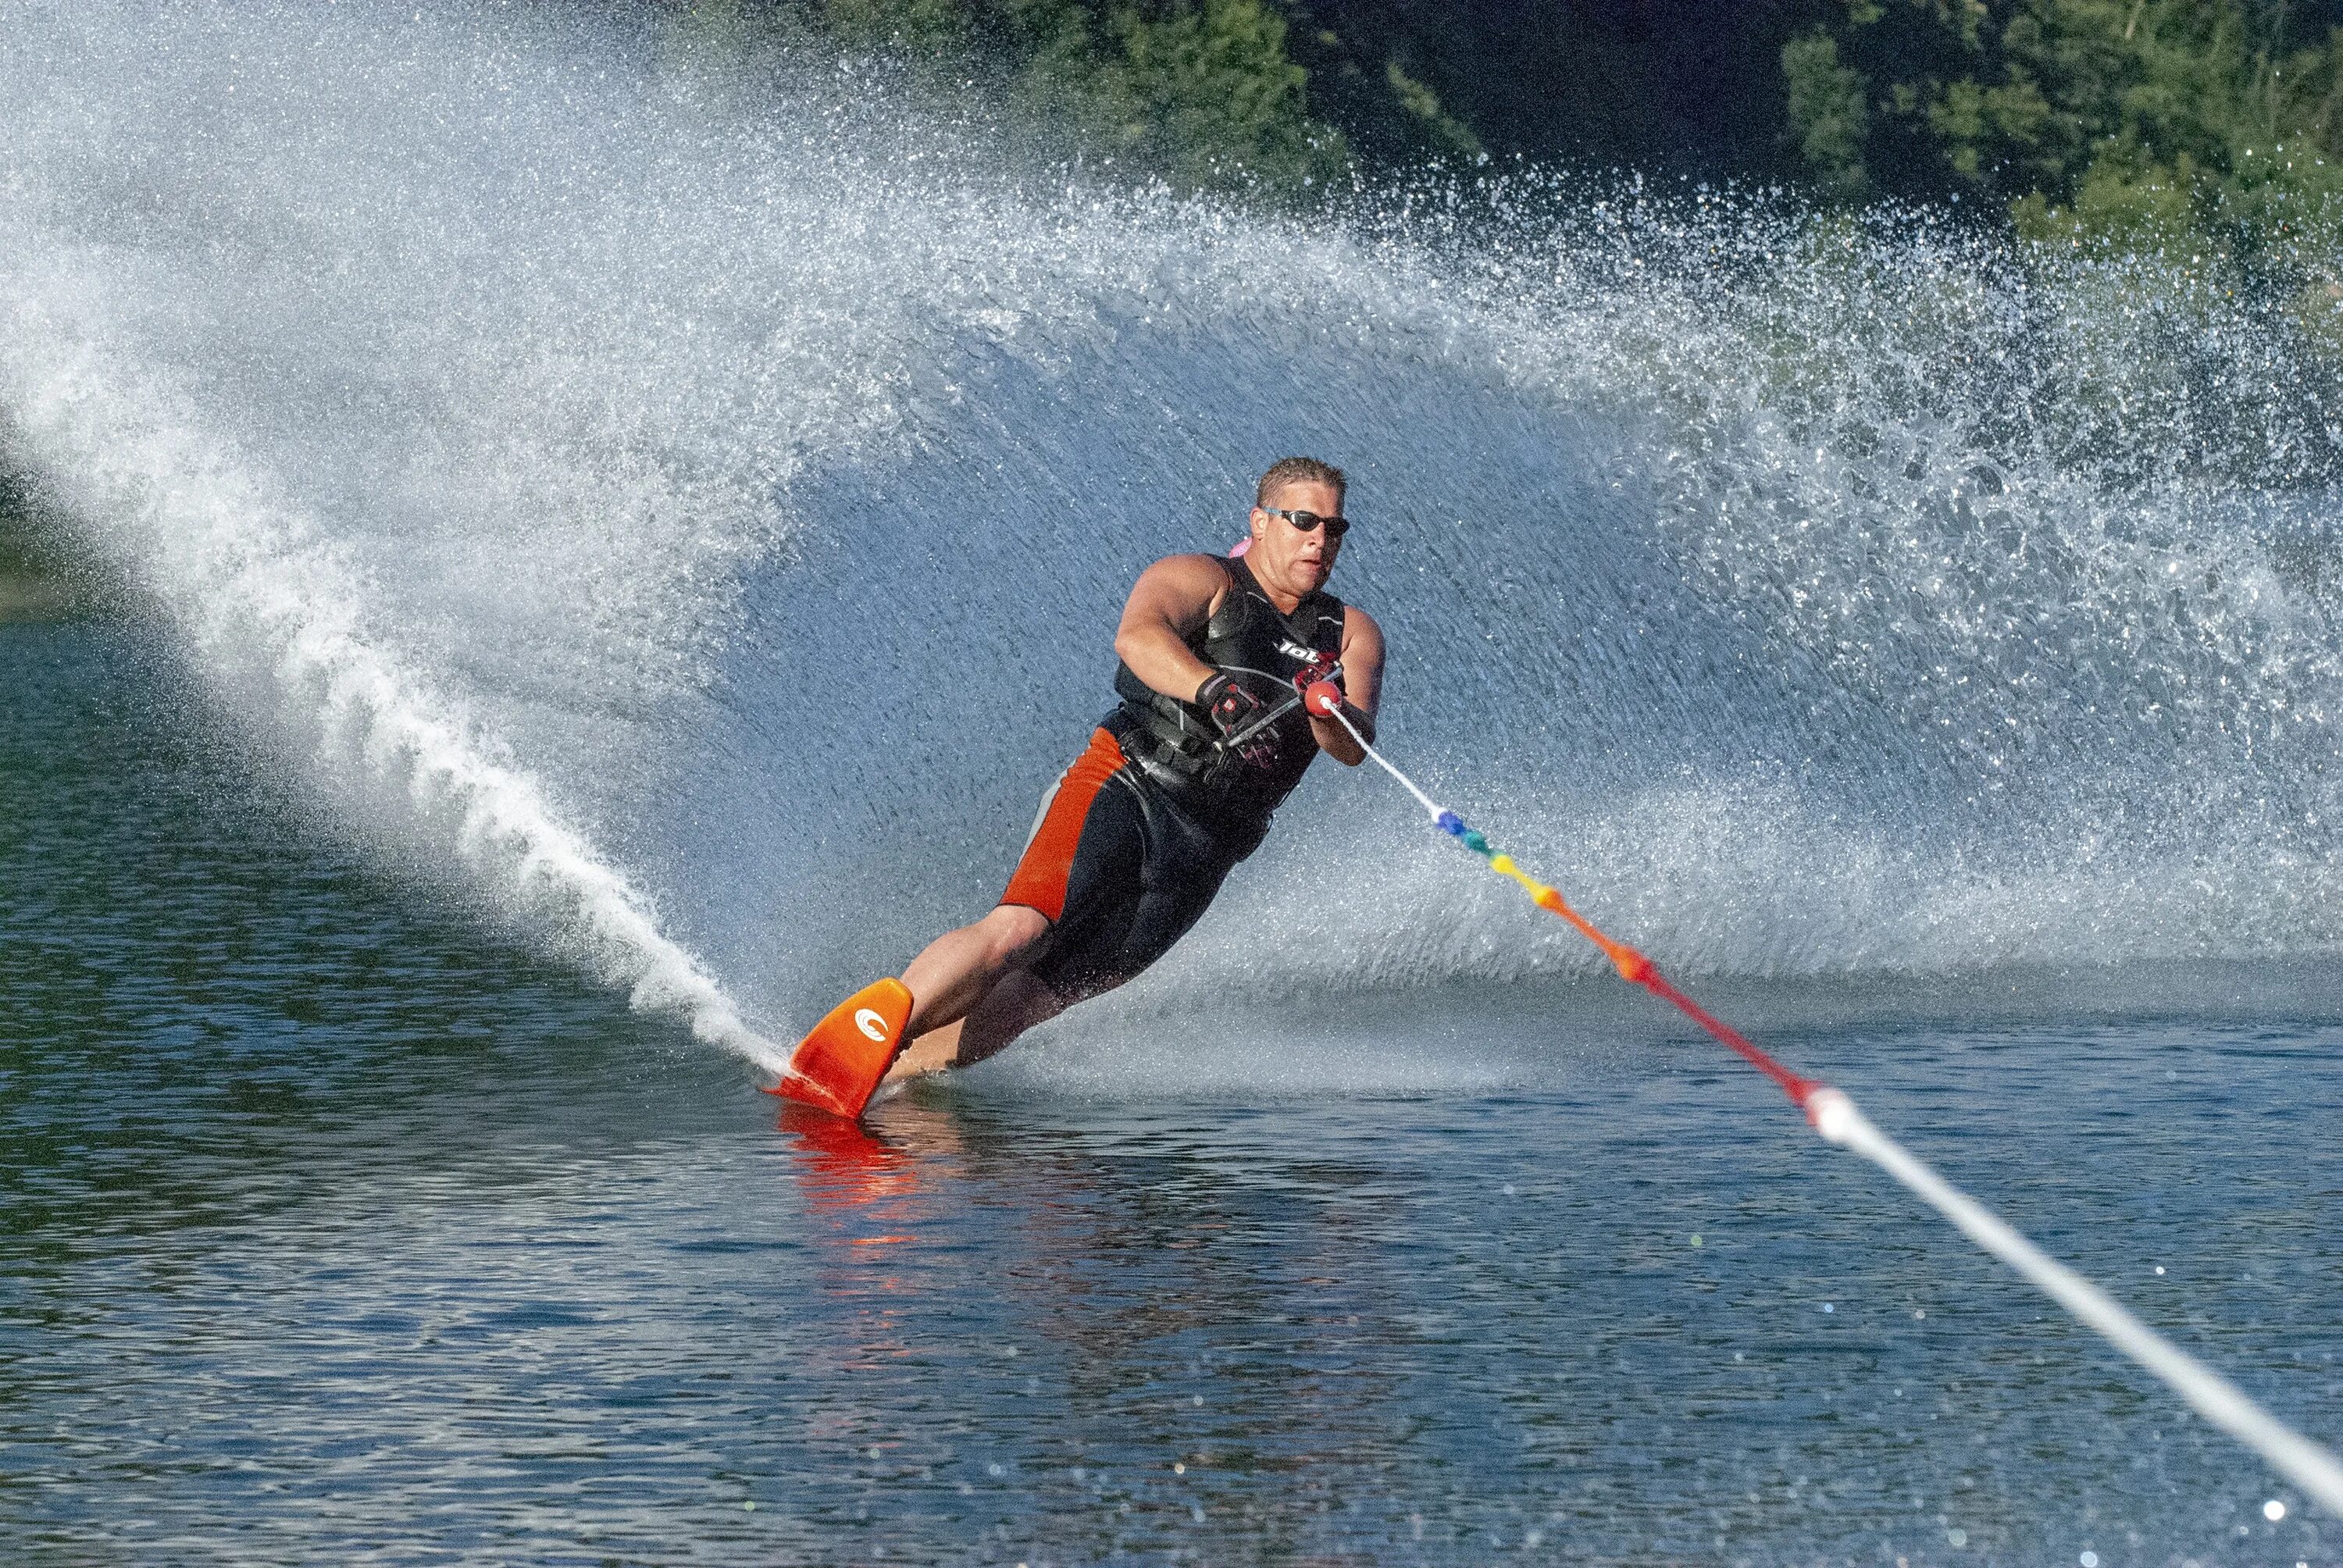 Ральф Самуэльсон водные лыжи. Катание на водных лыжах. Человек на водных лыжах. Водный спорт.